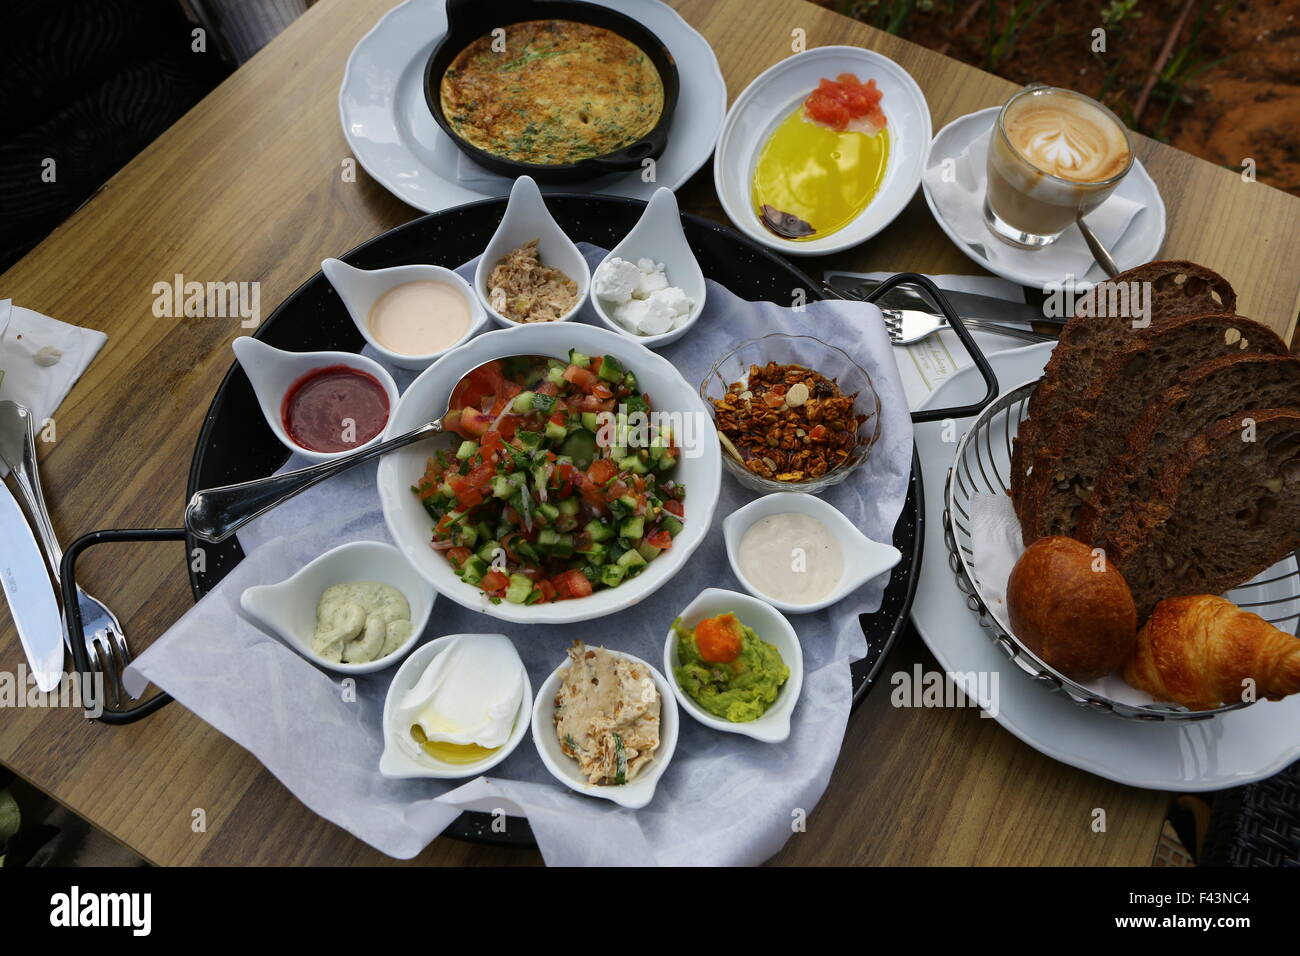 traditionelle-israelisches-fruhstuck-omelett-kase-salate-ein-frisches-brotchen-und-eine-tasse-cappuccino-f43nc4.jpg